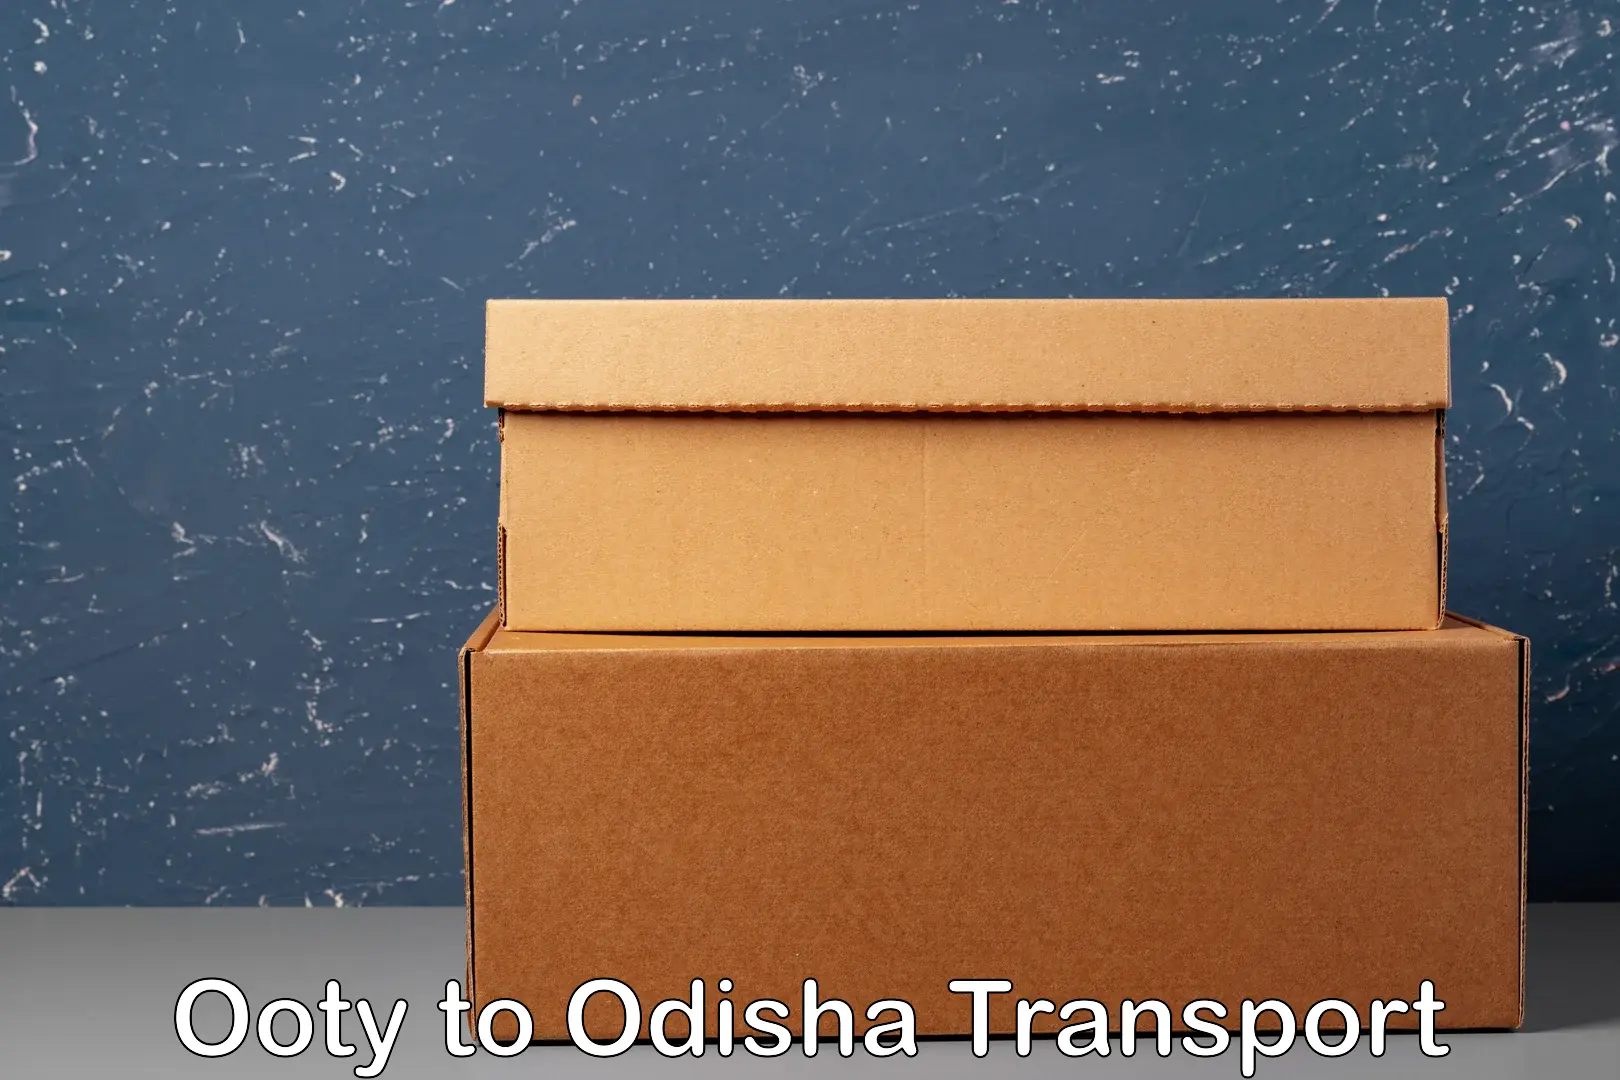 Bike shifting service in Ooty to Odisha